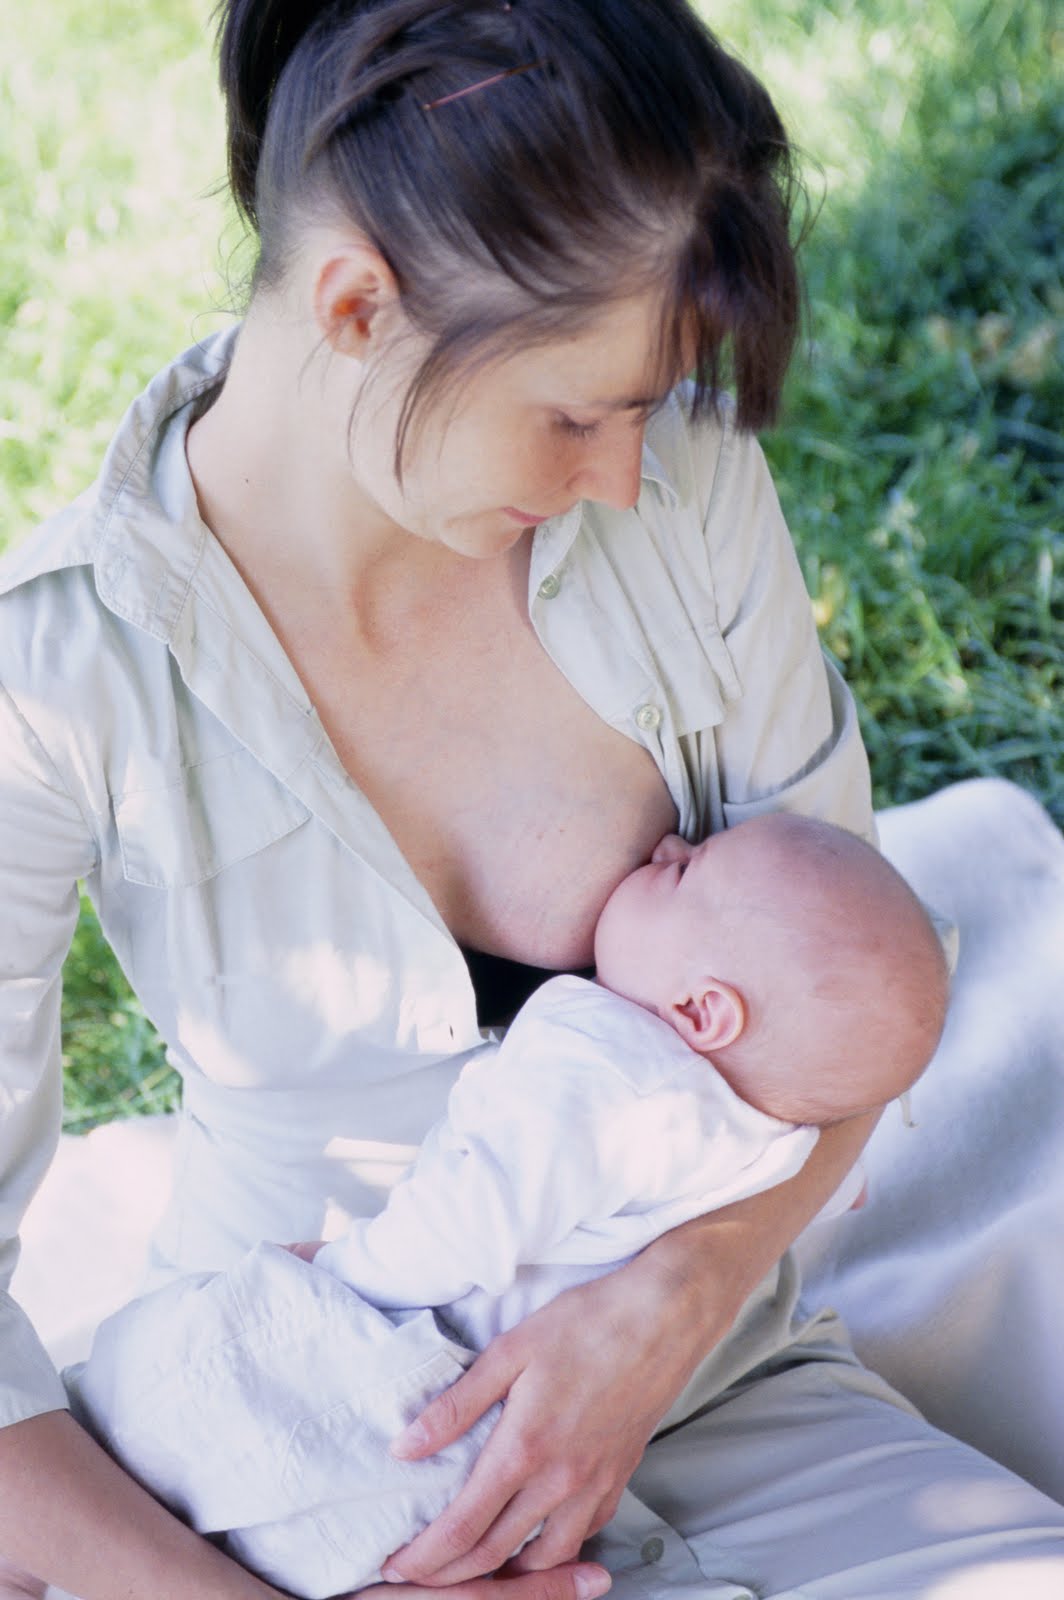 голая женщина кормит грудью ребенка фото фото 46